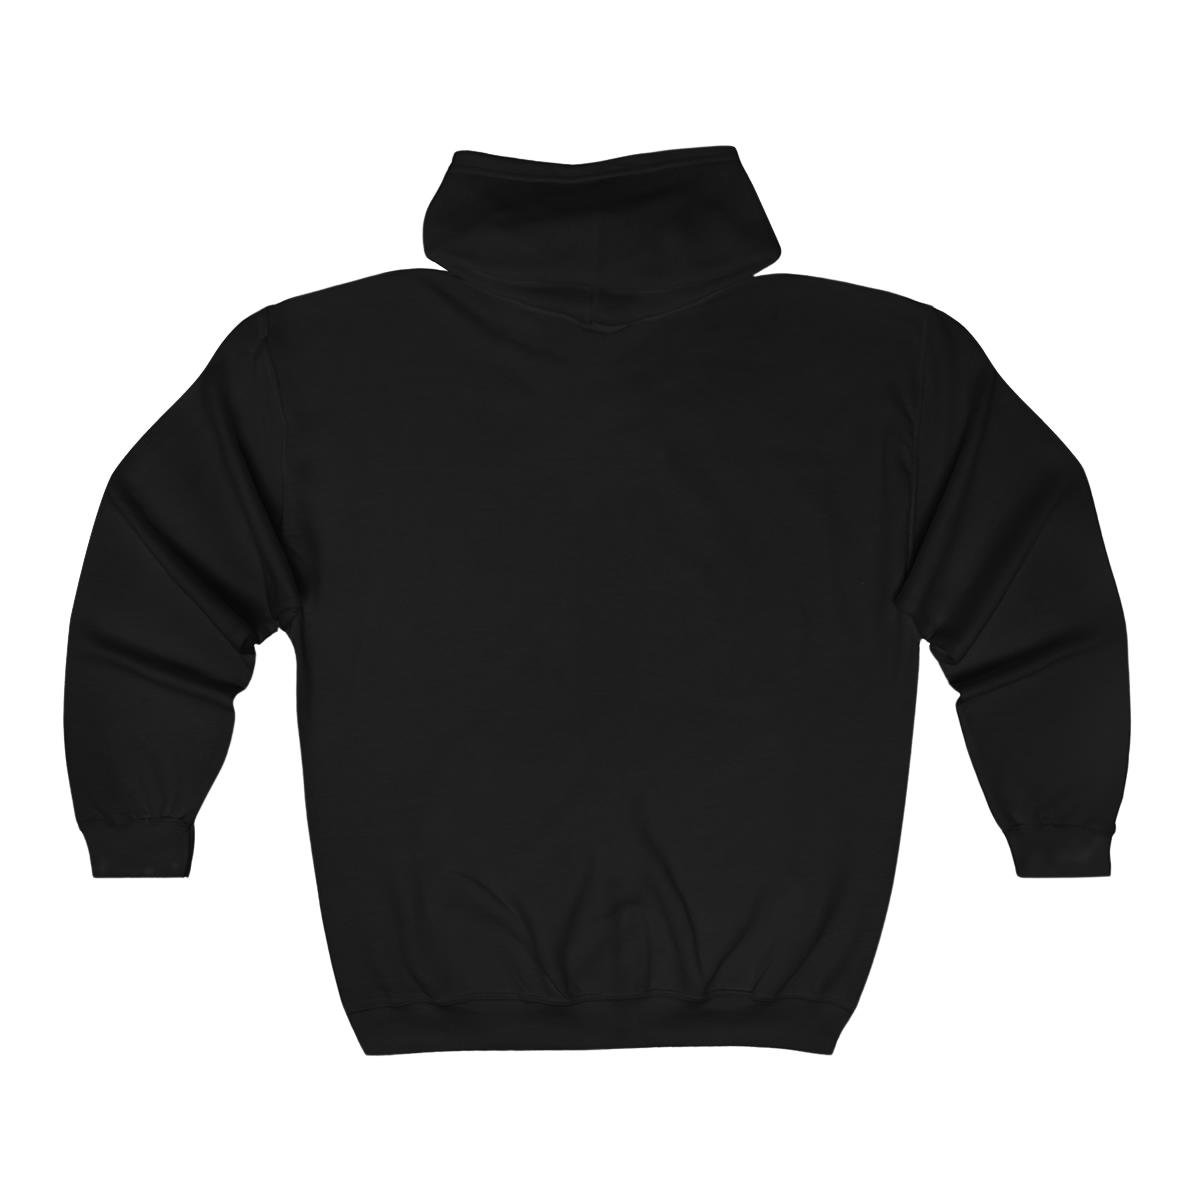 Kevin Pike – Heavenly Realms Full Zip Hooded Sweatshirt